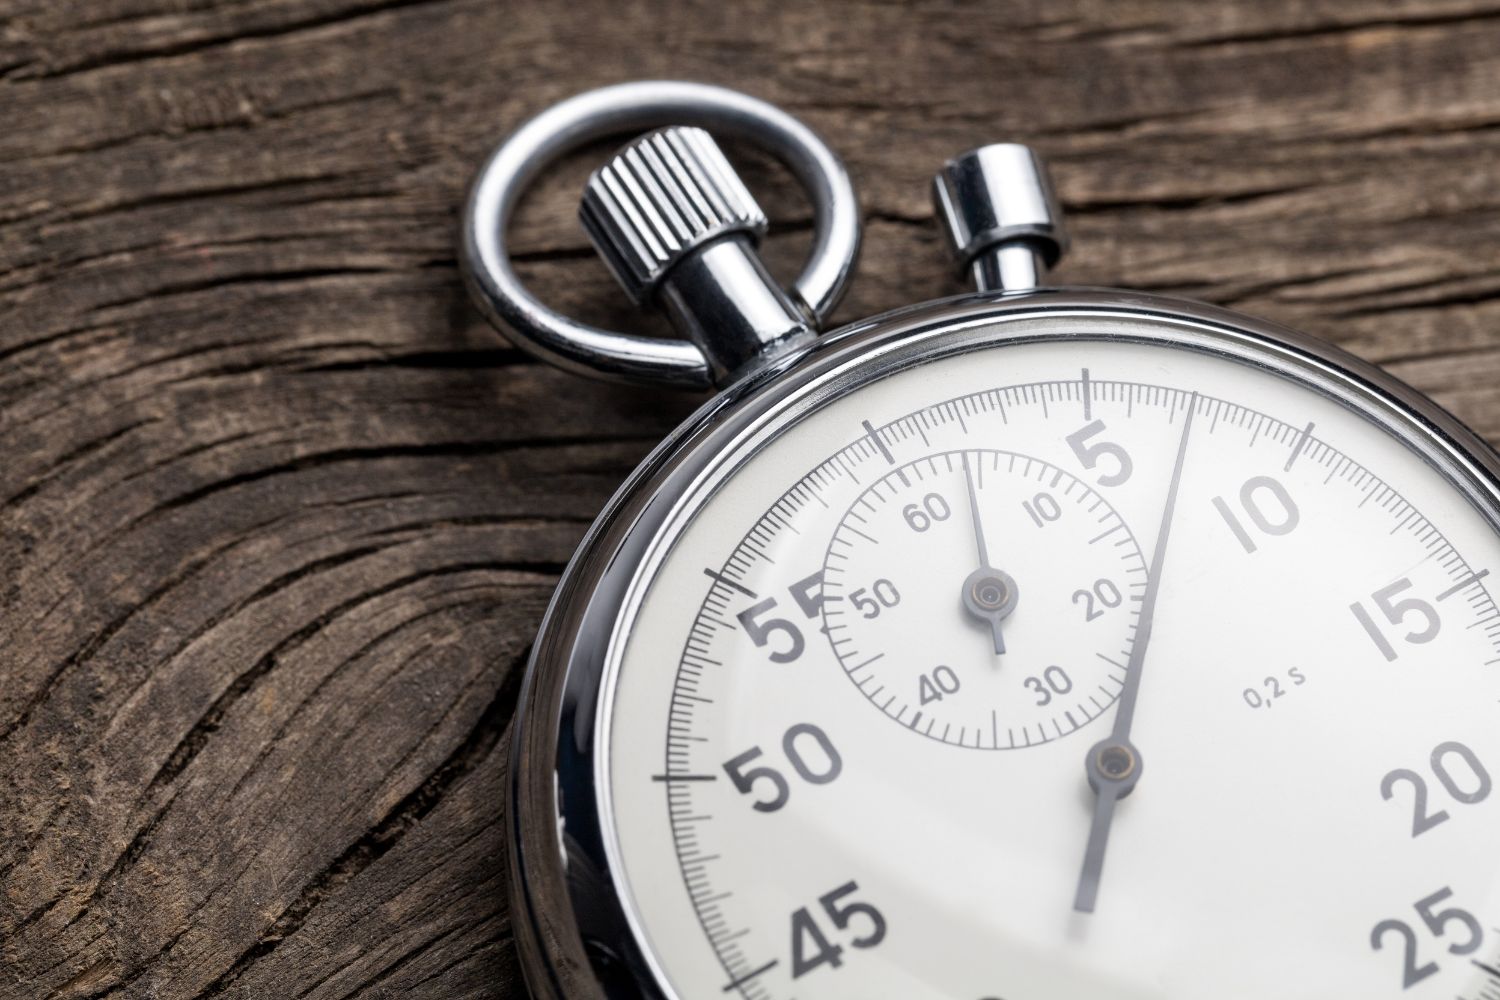 El cronómetro Sevilla es un reloj muy útil para medir el tiempo